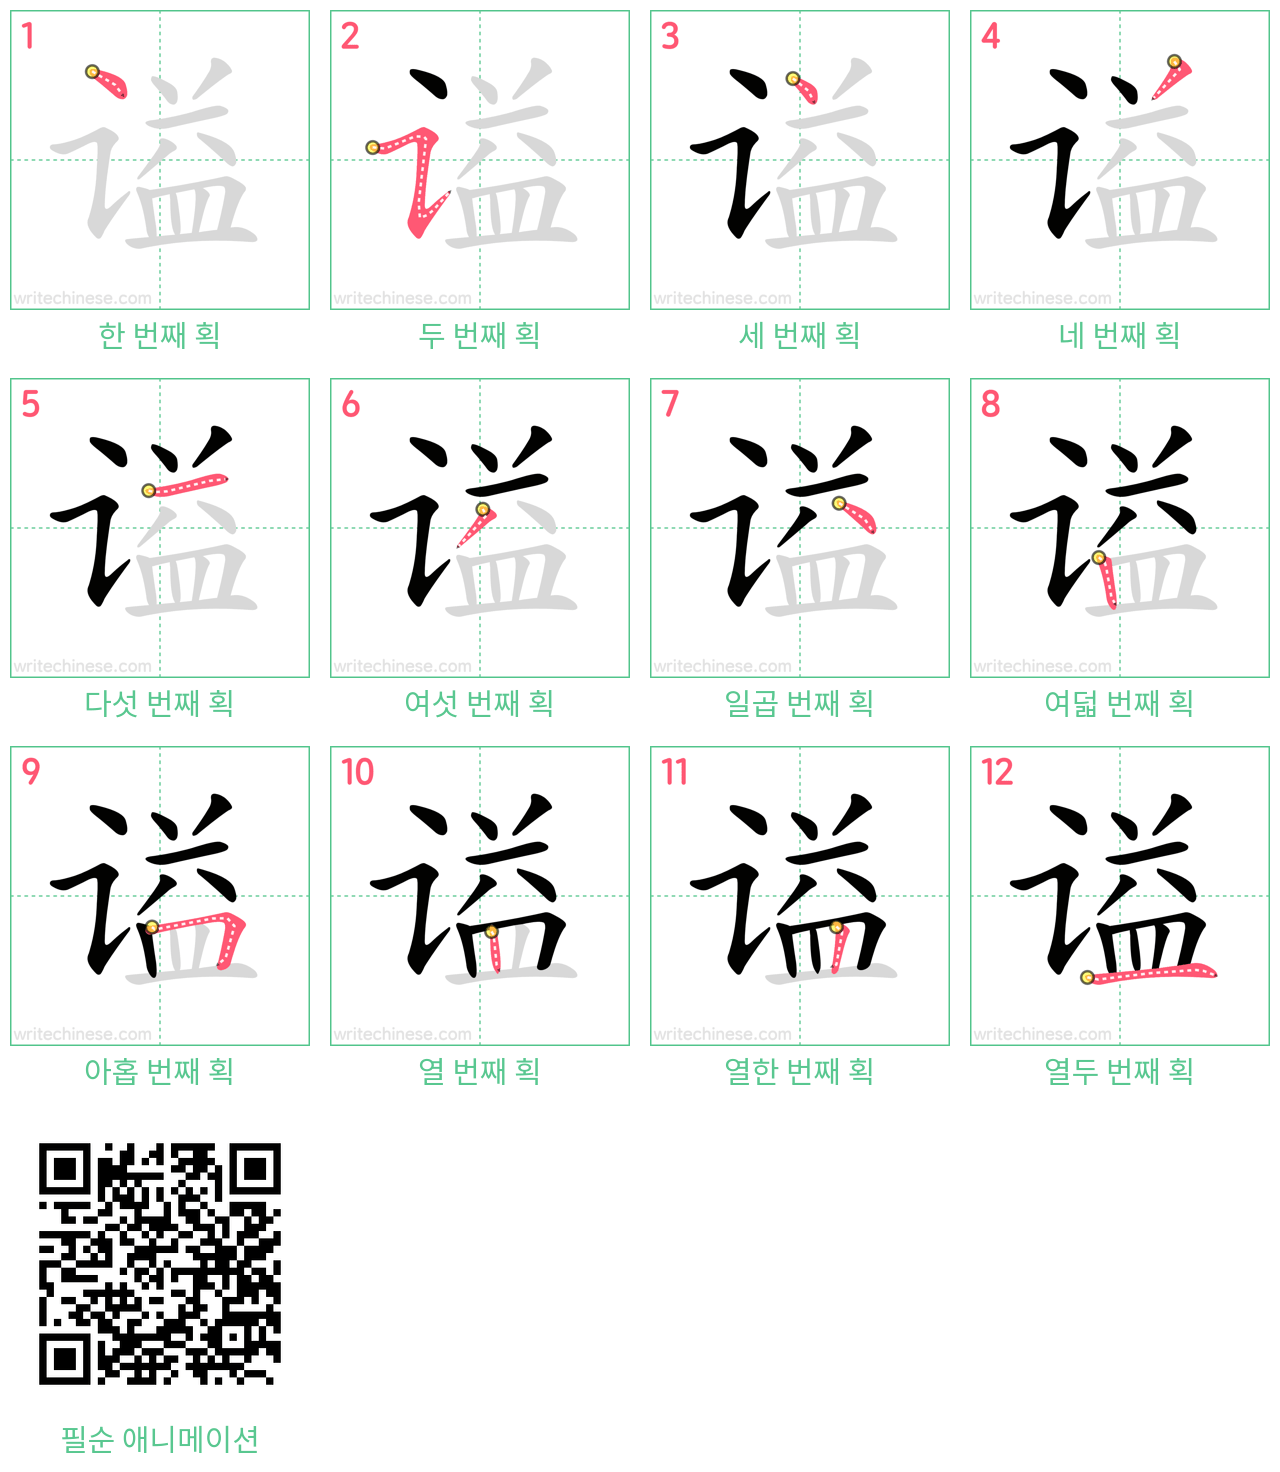 谥 step-by-step stroke order diagrams